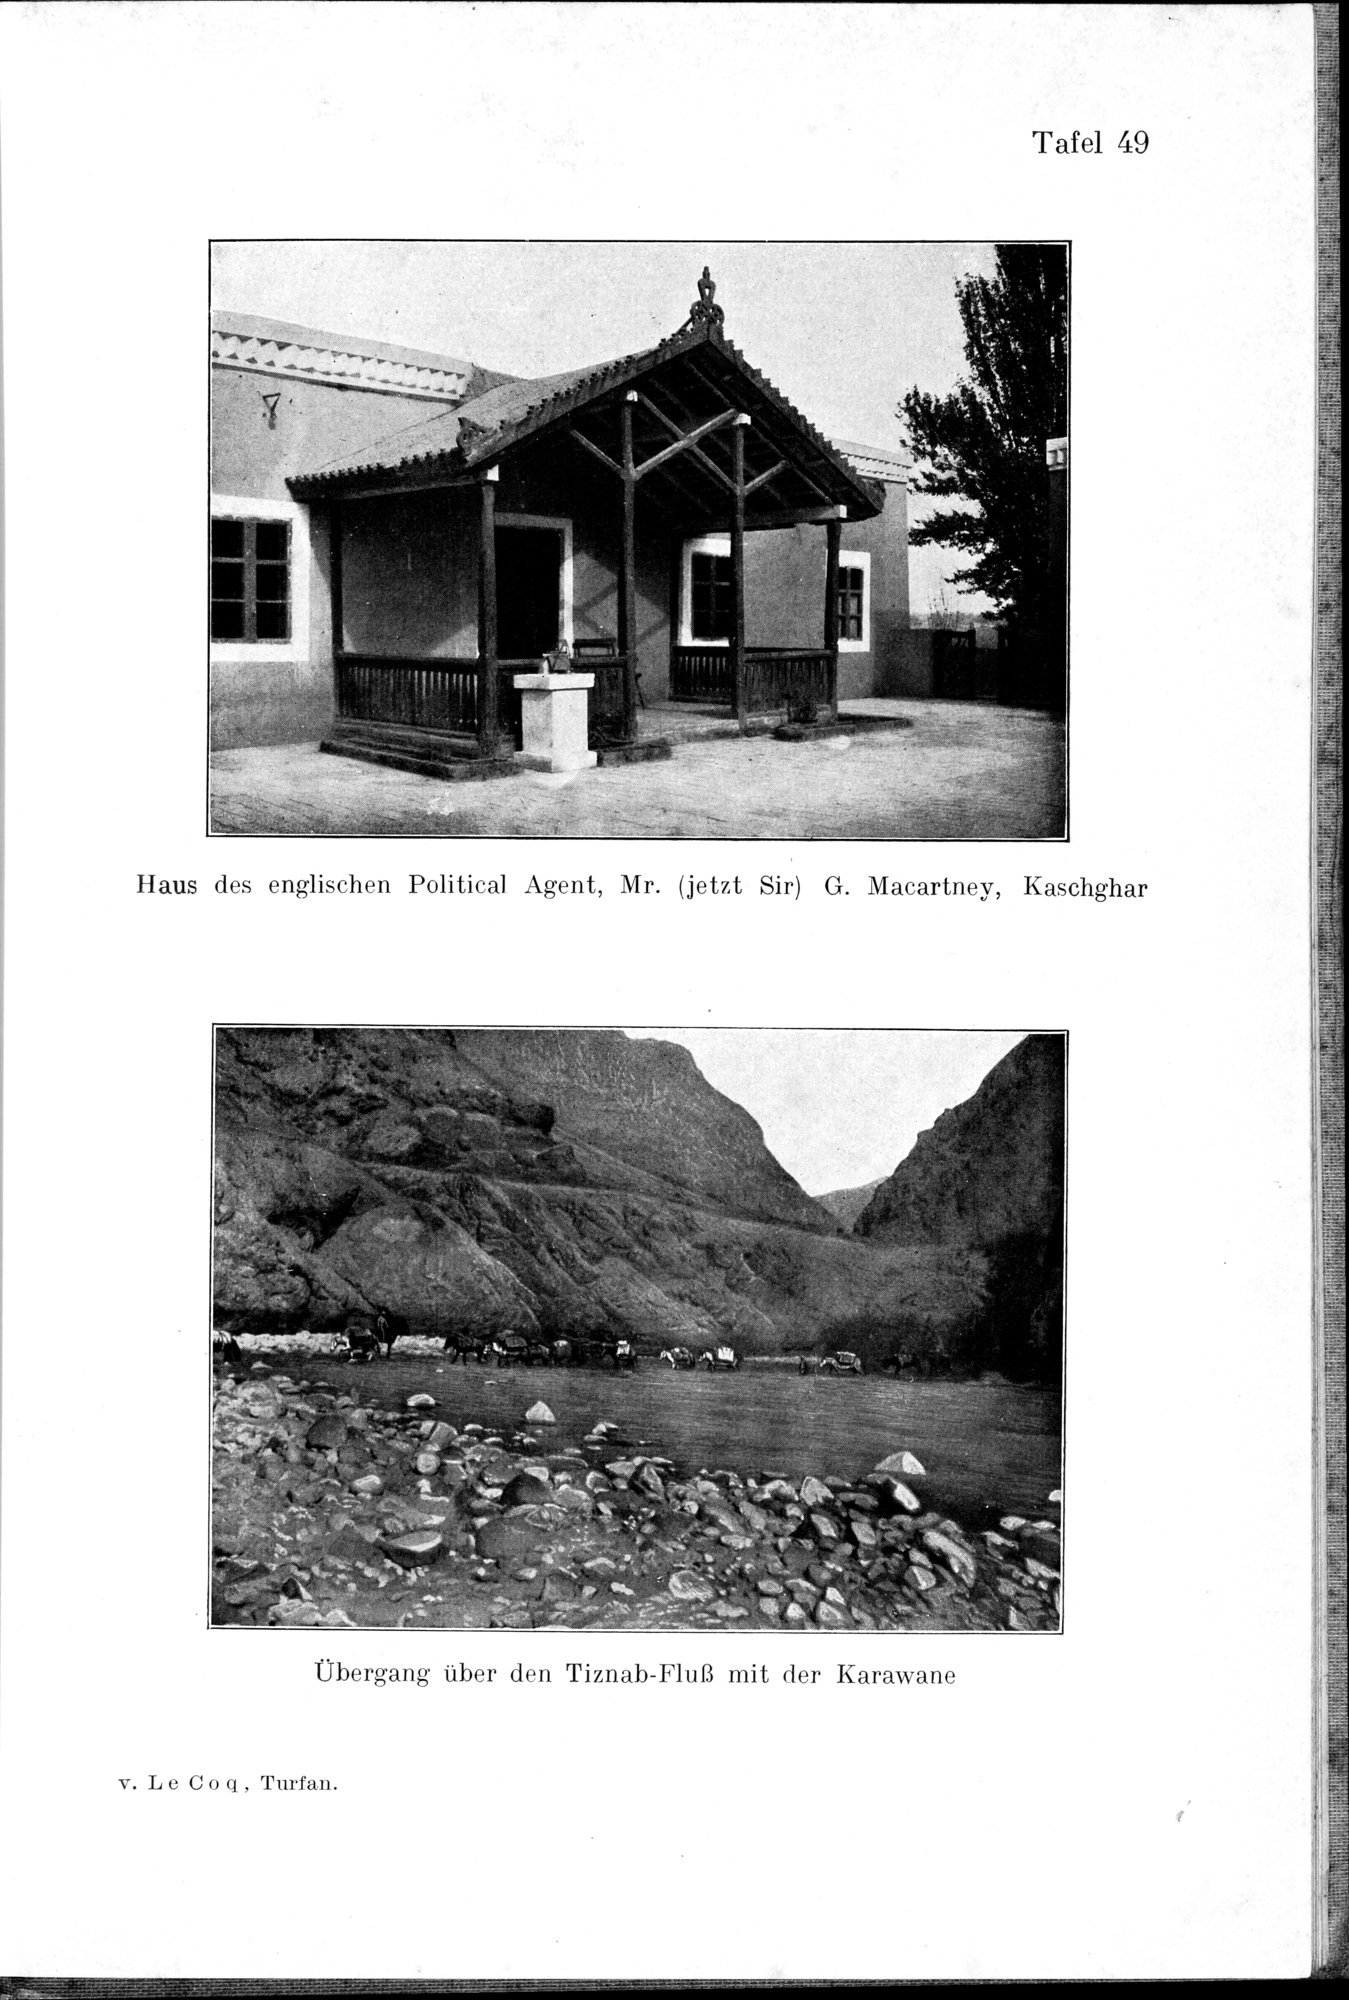 Auf Hellas Spuren in Ostturkistan : vol.1 / Page 217 (Grayscale High Resolution Image)